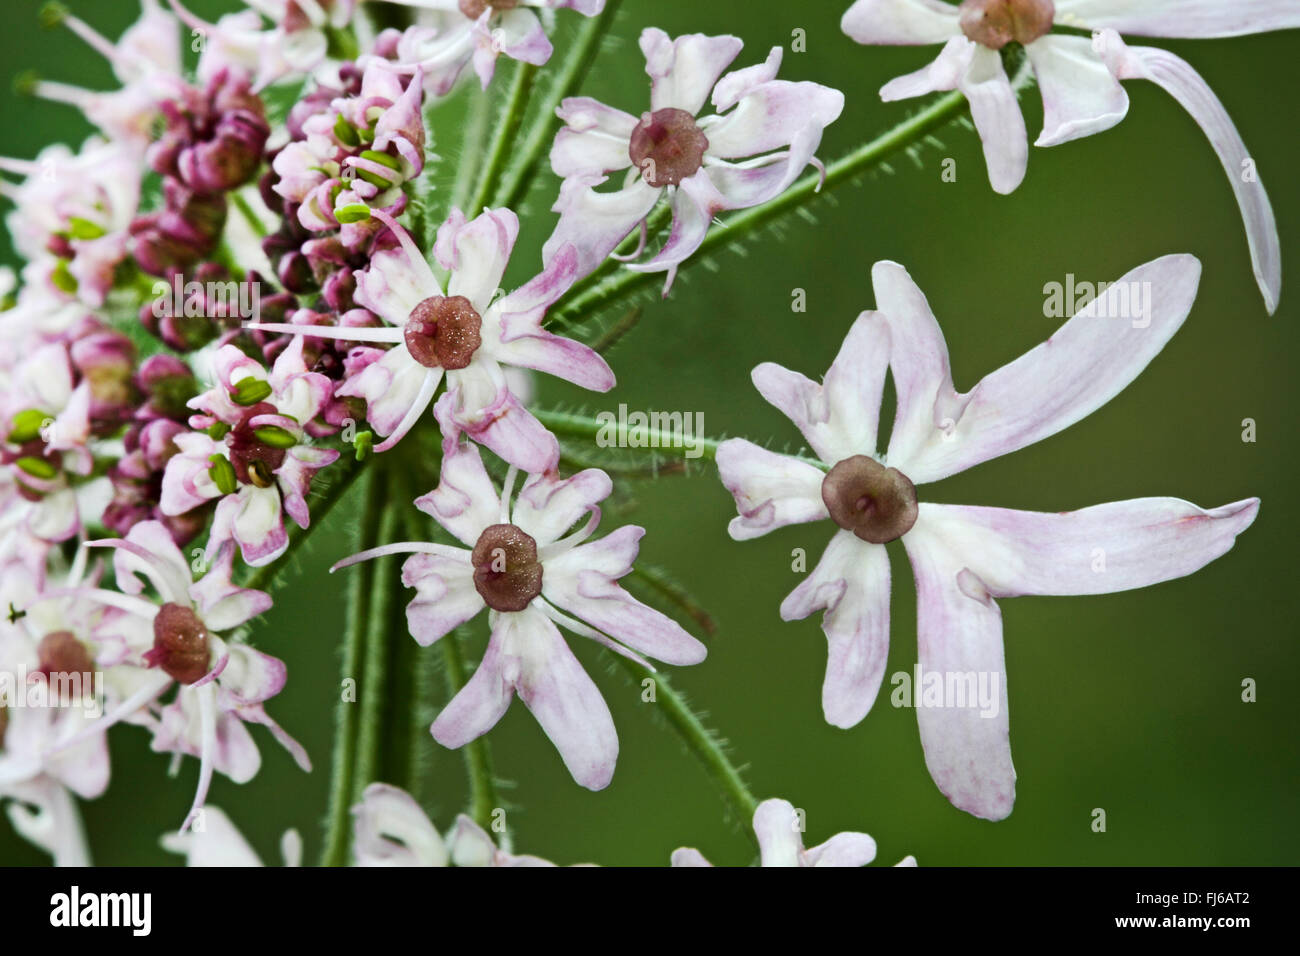 Cow parsnip, Common Hogweed, Hogweed, American cow-parsnip (Heracleum sphondylium), flowers, Germany Stock Photo